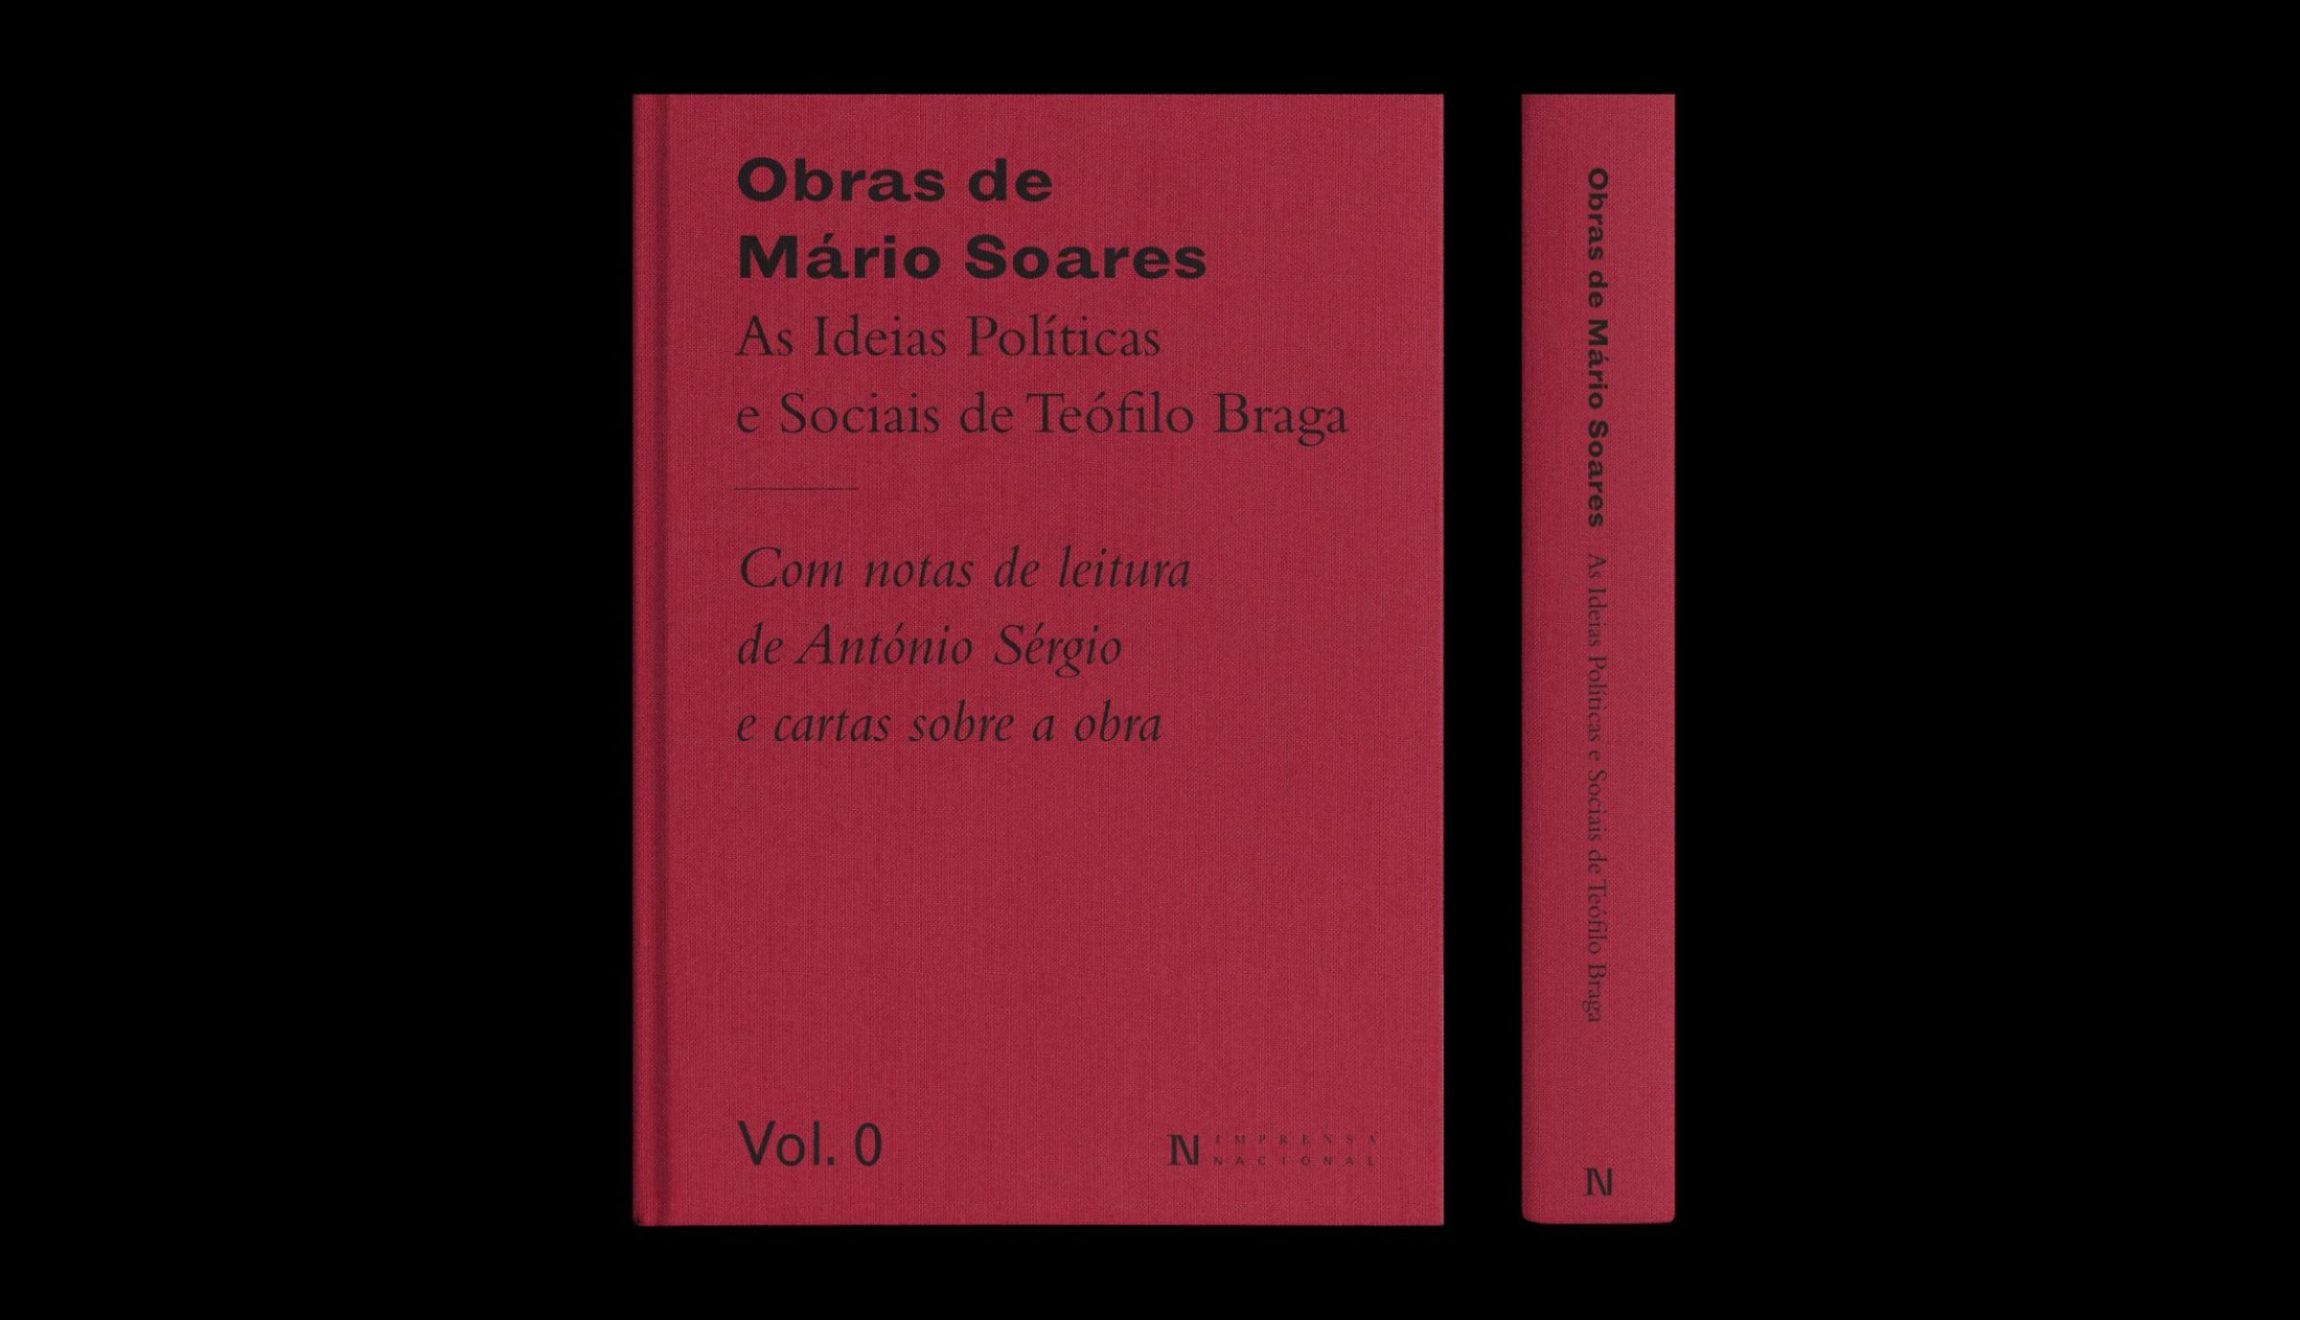 Imprensa Nacional lança volume de apresentação da coleção «Obras de Mário Soares»